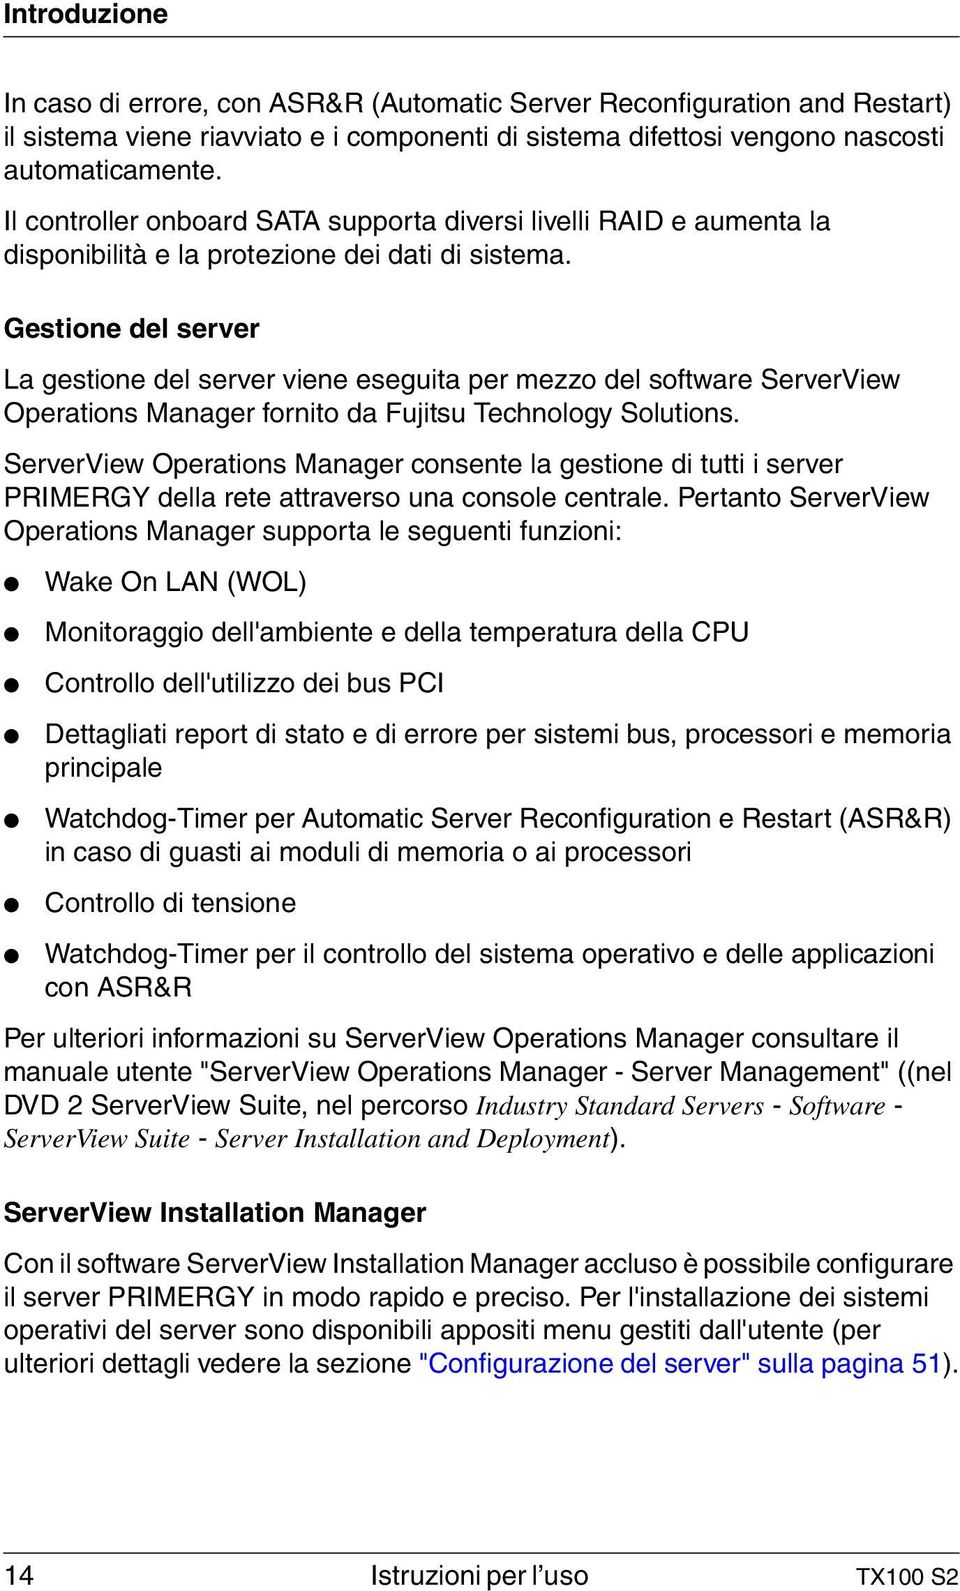 Gestione del server La gestione del server viene eseguita per mezzo del software ServerView Operations Manager fornito da Fujitsu Technology Solutions.